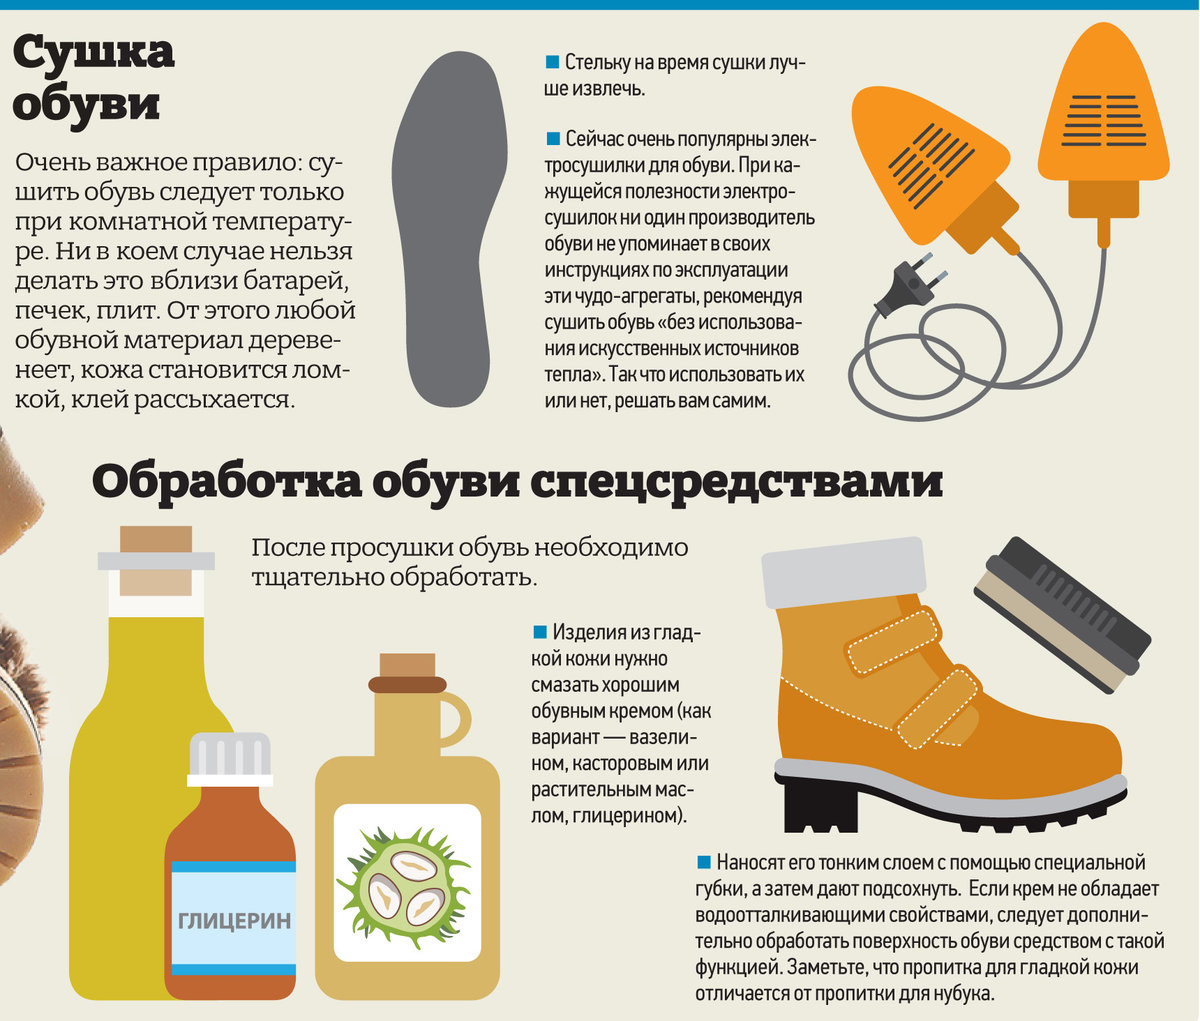 Как в домашних условиях очистить замшевую обувь